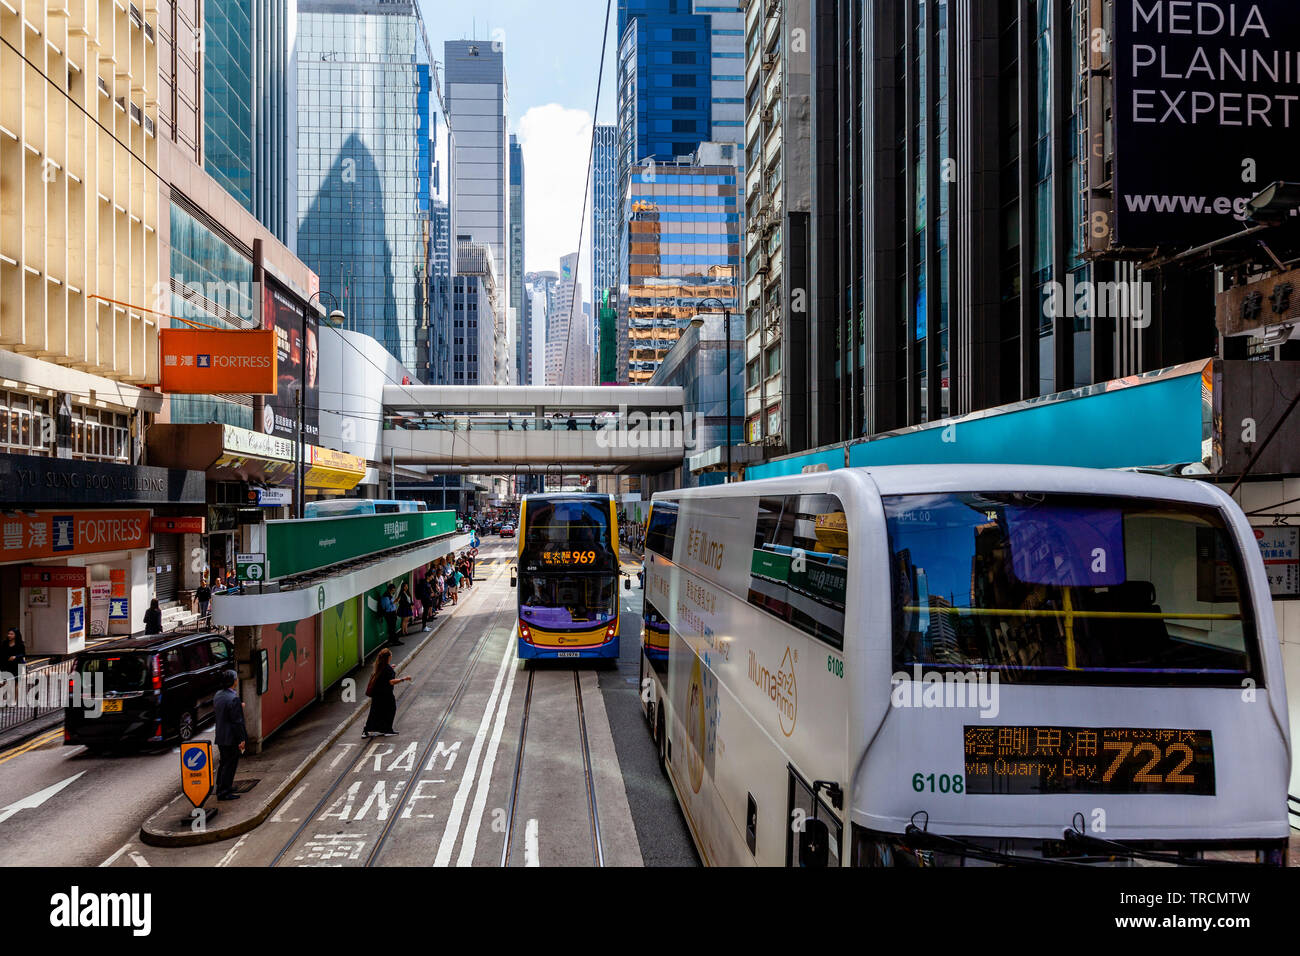 Hong Kong Buses and City Skyline, Hong Kong, China Stock Photo